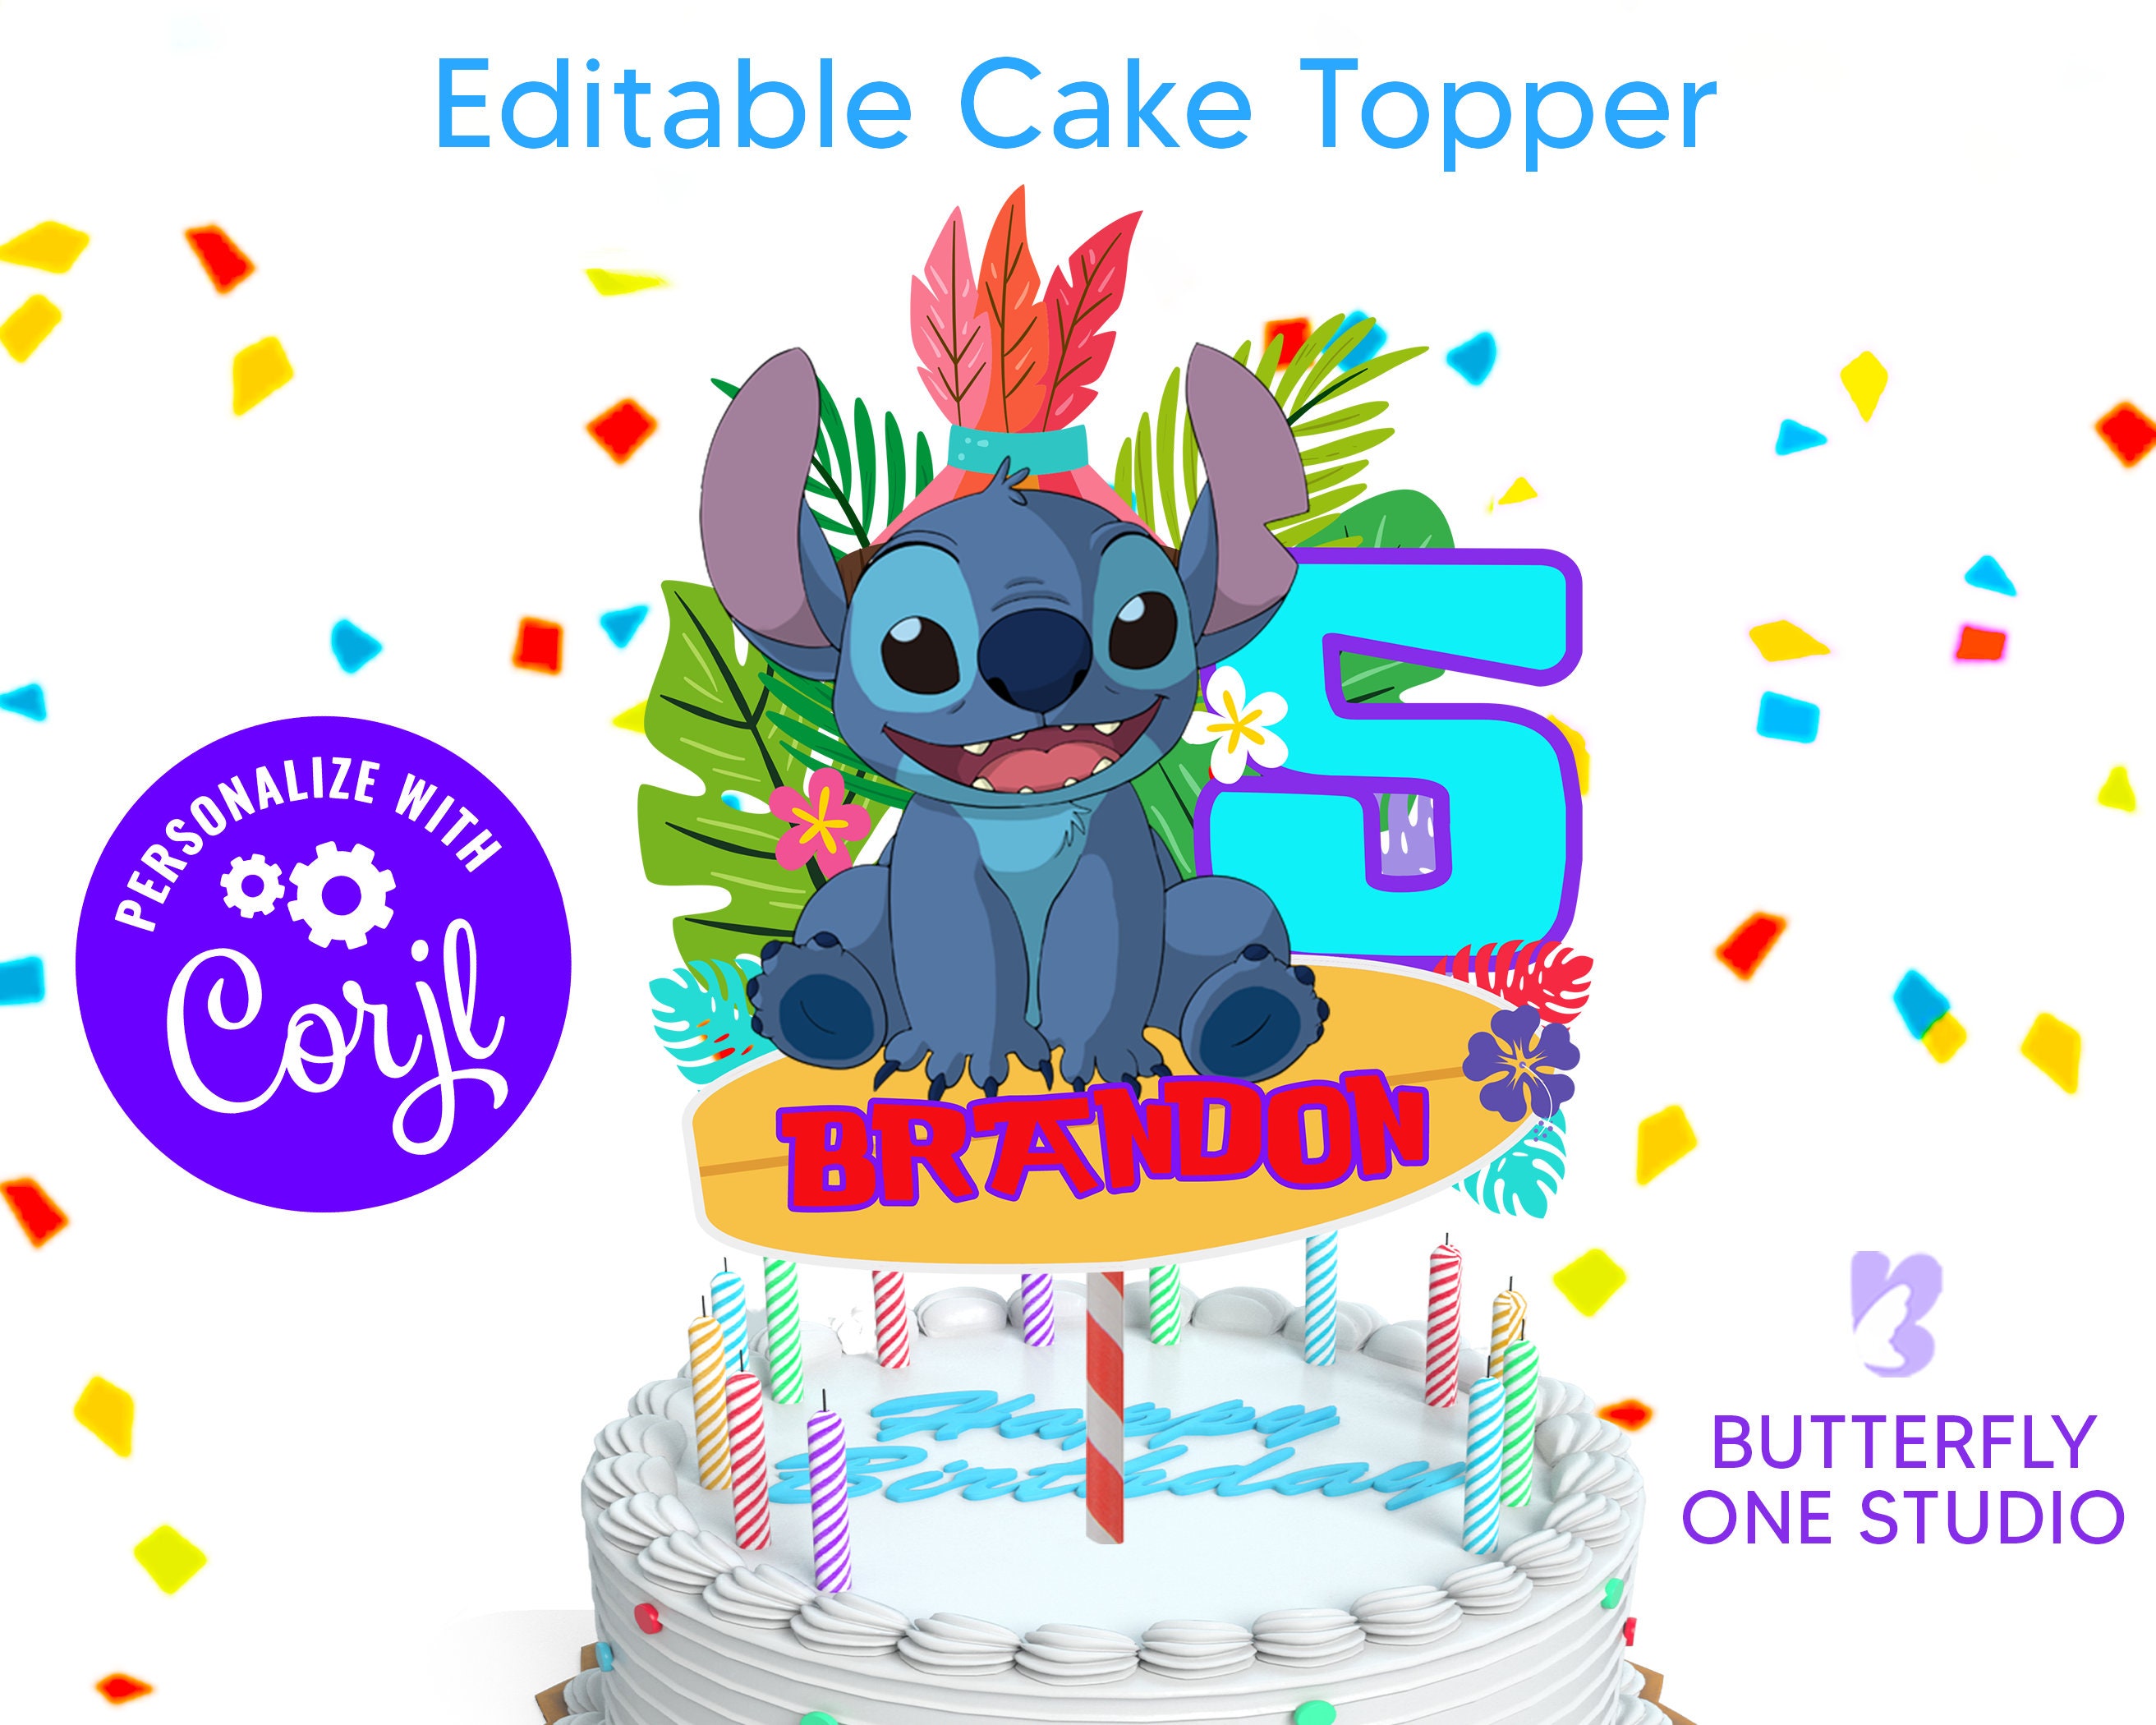 Cumpleaños Pastel Stitch DXF, SVG, PNG, eps Archivos Lilo & Stitch  Celebración de cumpleaños